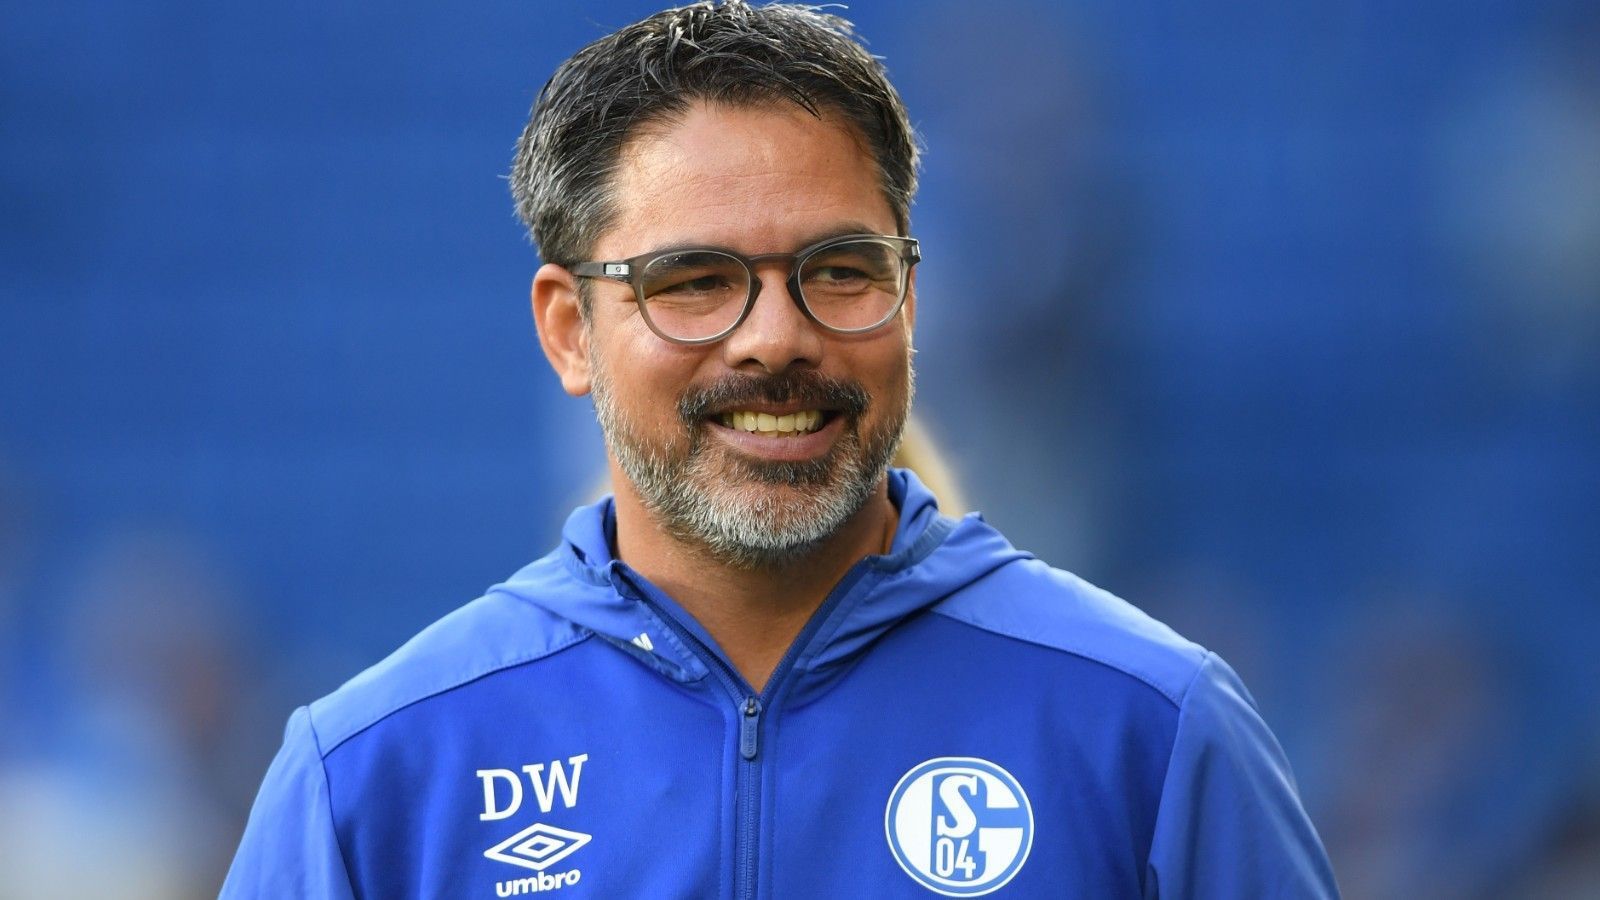 
                <strong>Platz 4: David Wagner</strong><br>
                Verein: Schalke 04
              